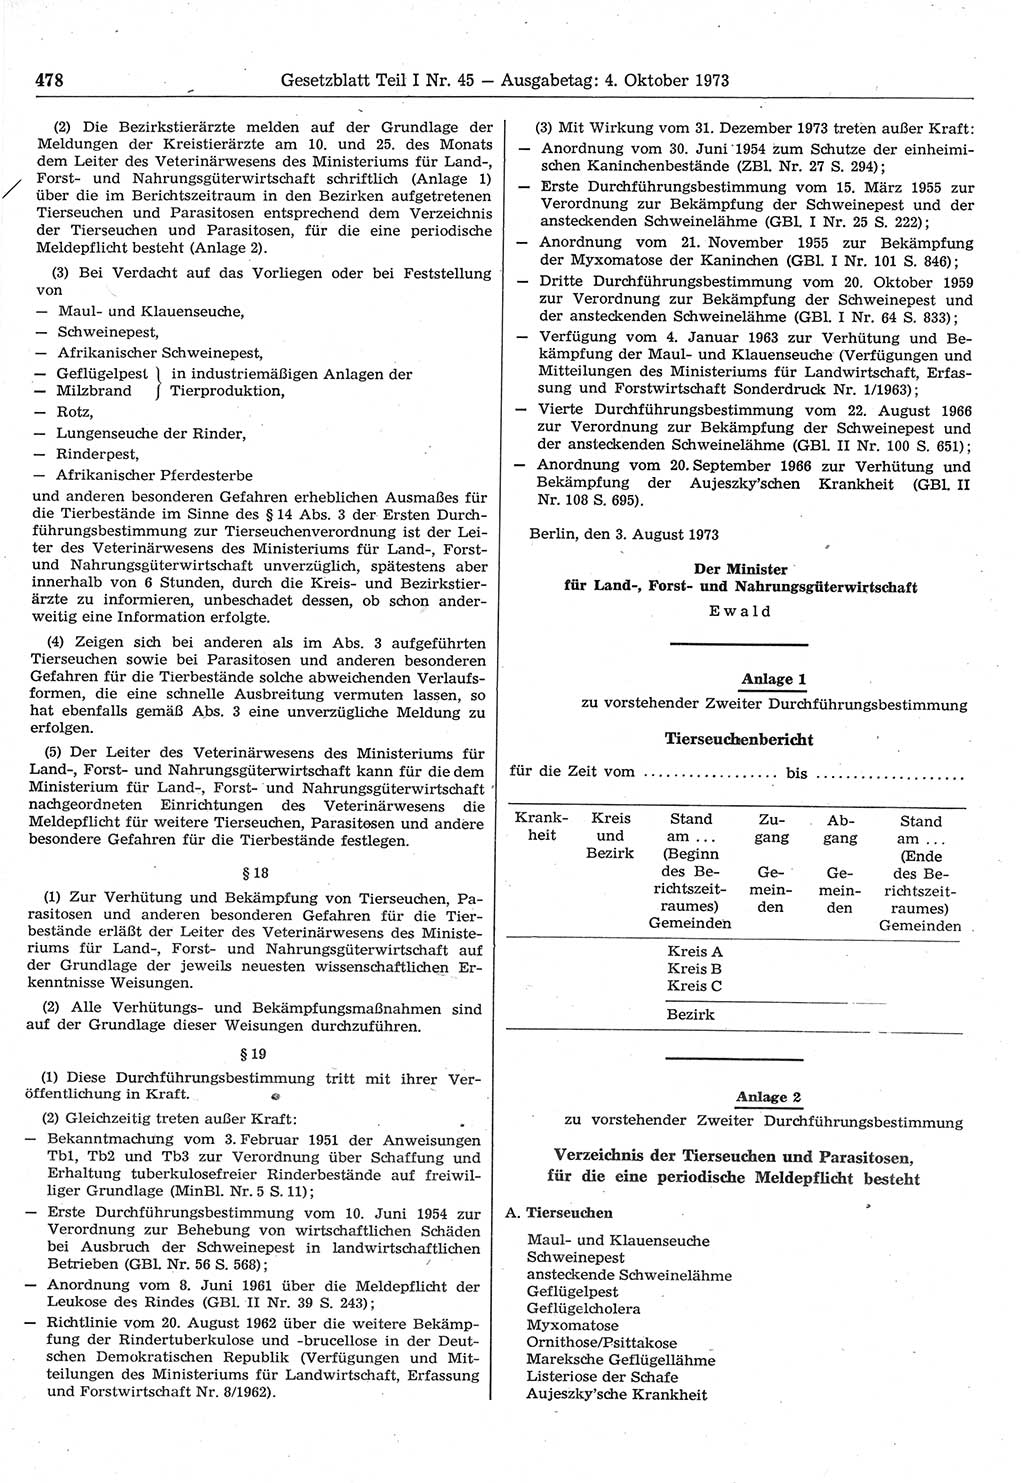 Gesetzblatt (GBl.) der Deutschen Demokratischen Republik (DDR) Teil Ⅰ 1973, Seite 478 (GBl. DDR Ⅰ 1973, S. 478)